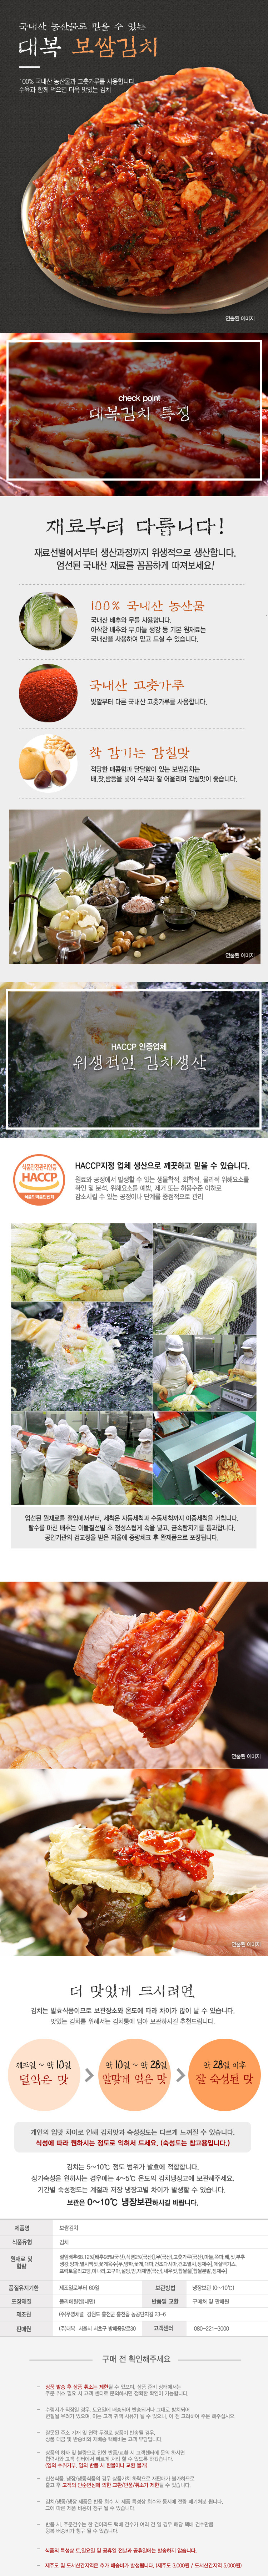 kimchi(bo).jpg